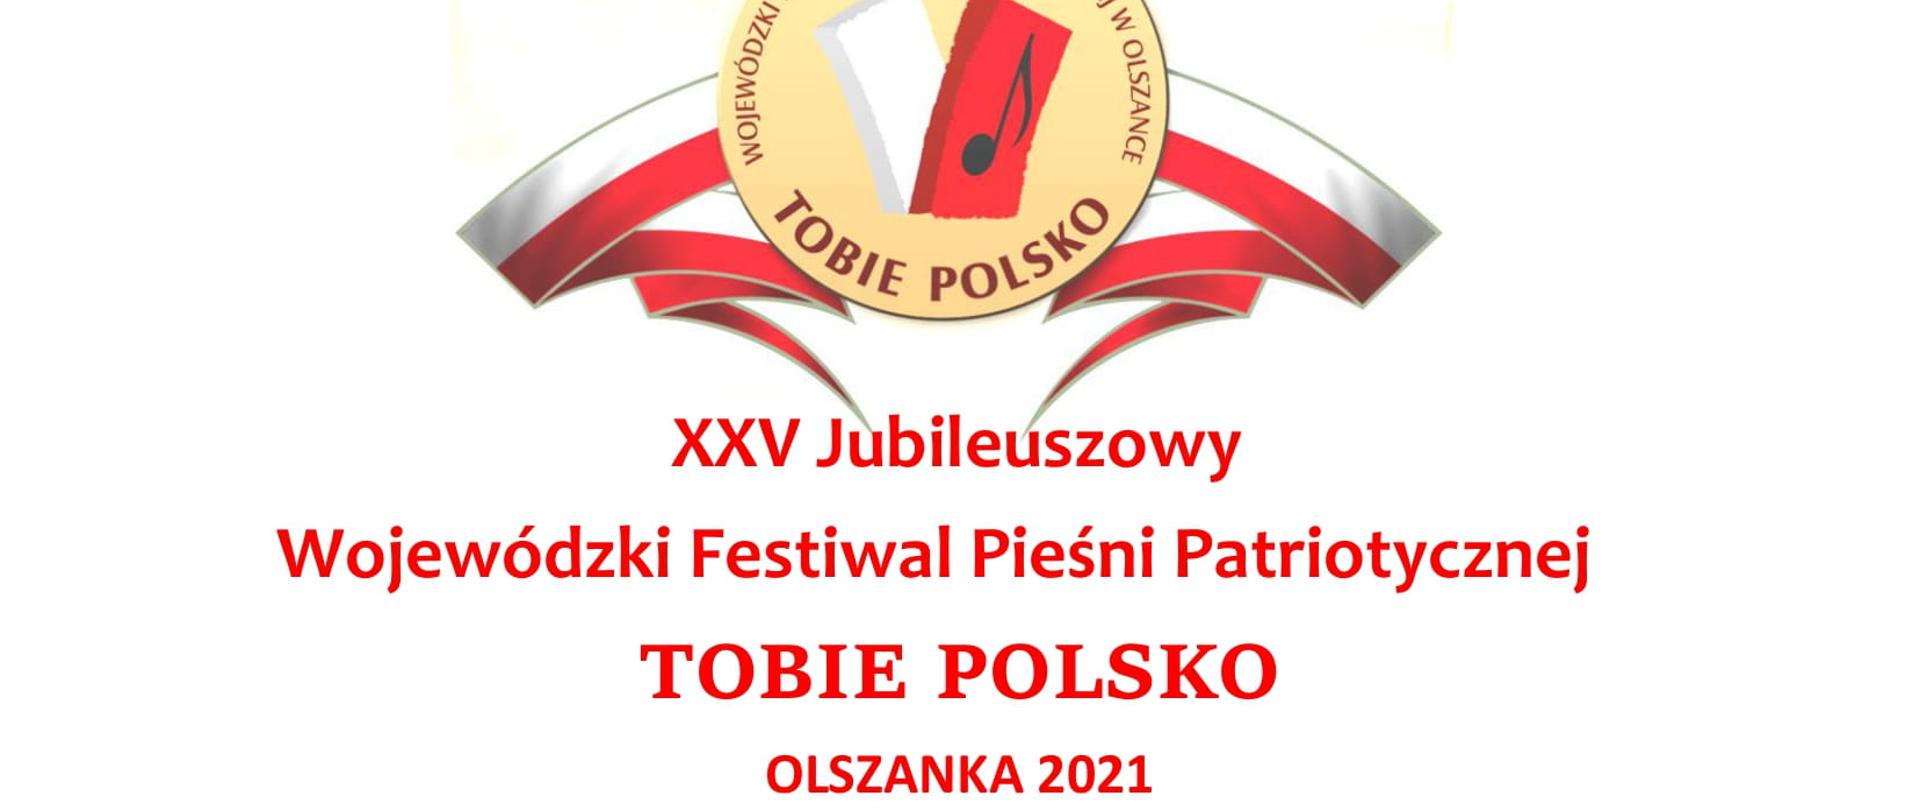 XXV Jubileuszowy
Wojewódzki Festiwal Pieśni Patriotycznej
TOBIE POLSKO